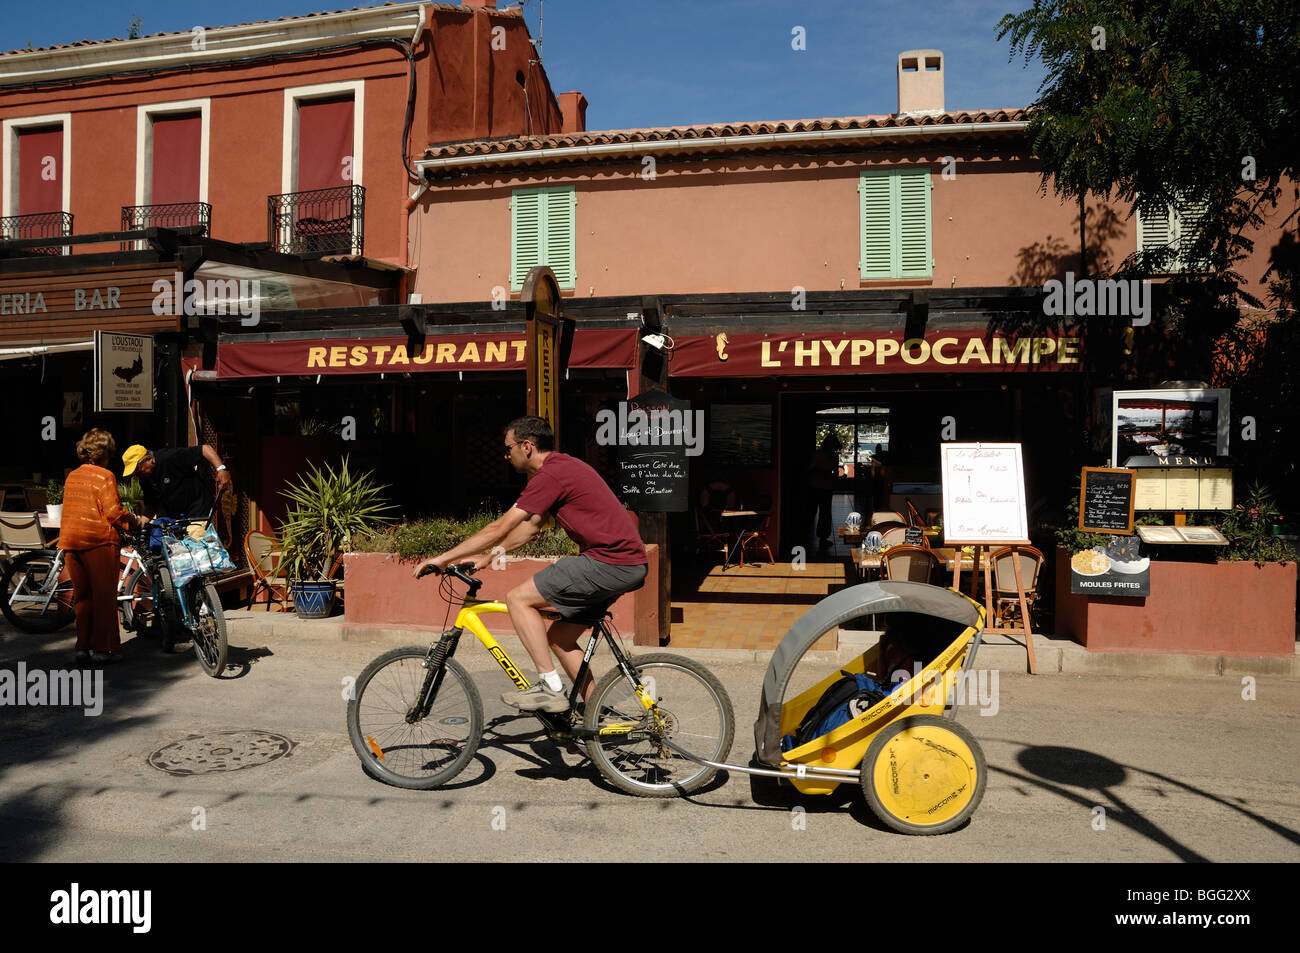 Radfahrer mit Kind Trailer Zyklen Vergangenheit Restaurants auf der Insel Porquerolles, Îles Hyères, Var, Côte d ' Azur französische Riviera Frankreich Stockfoto